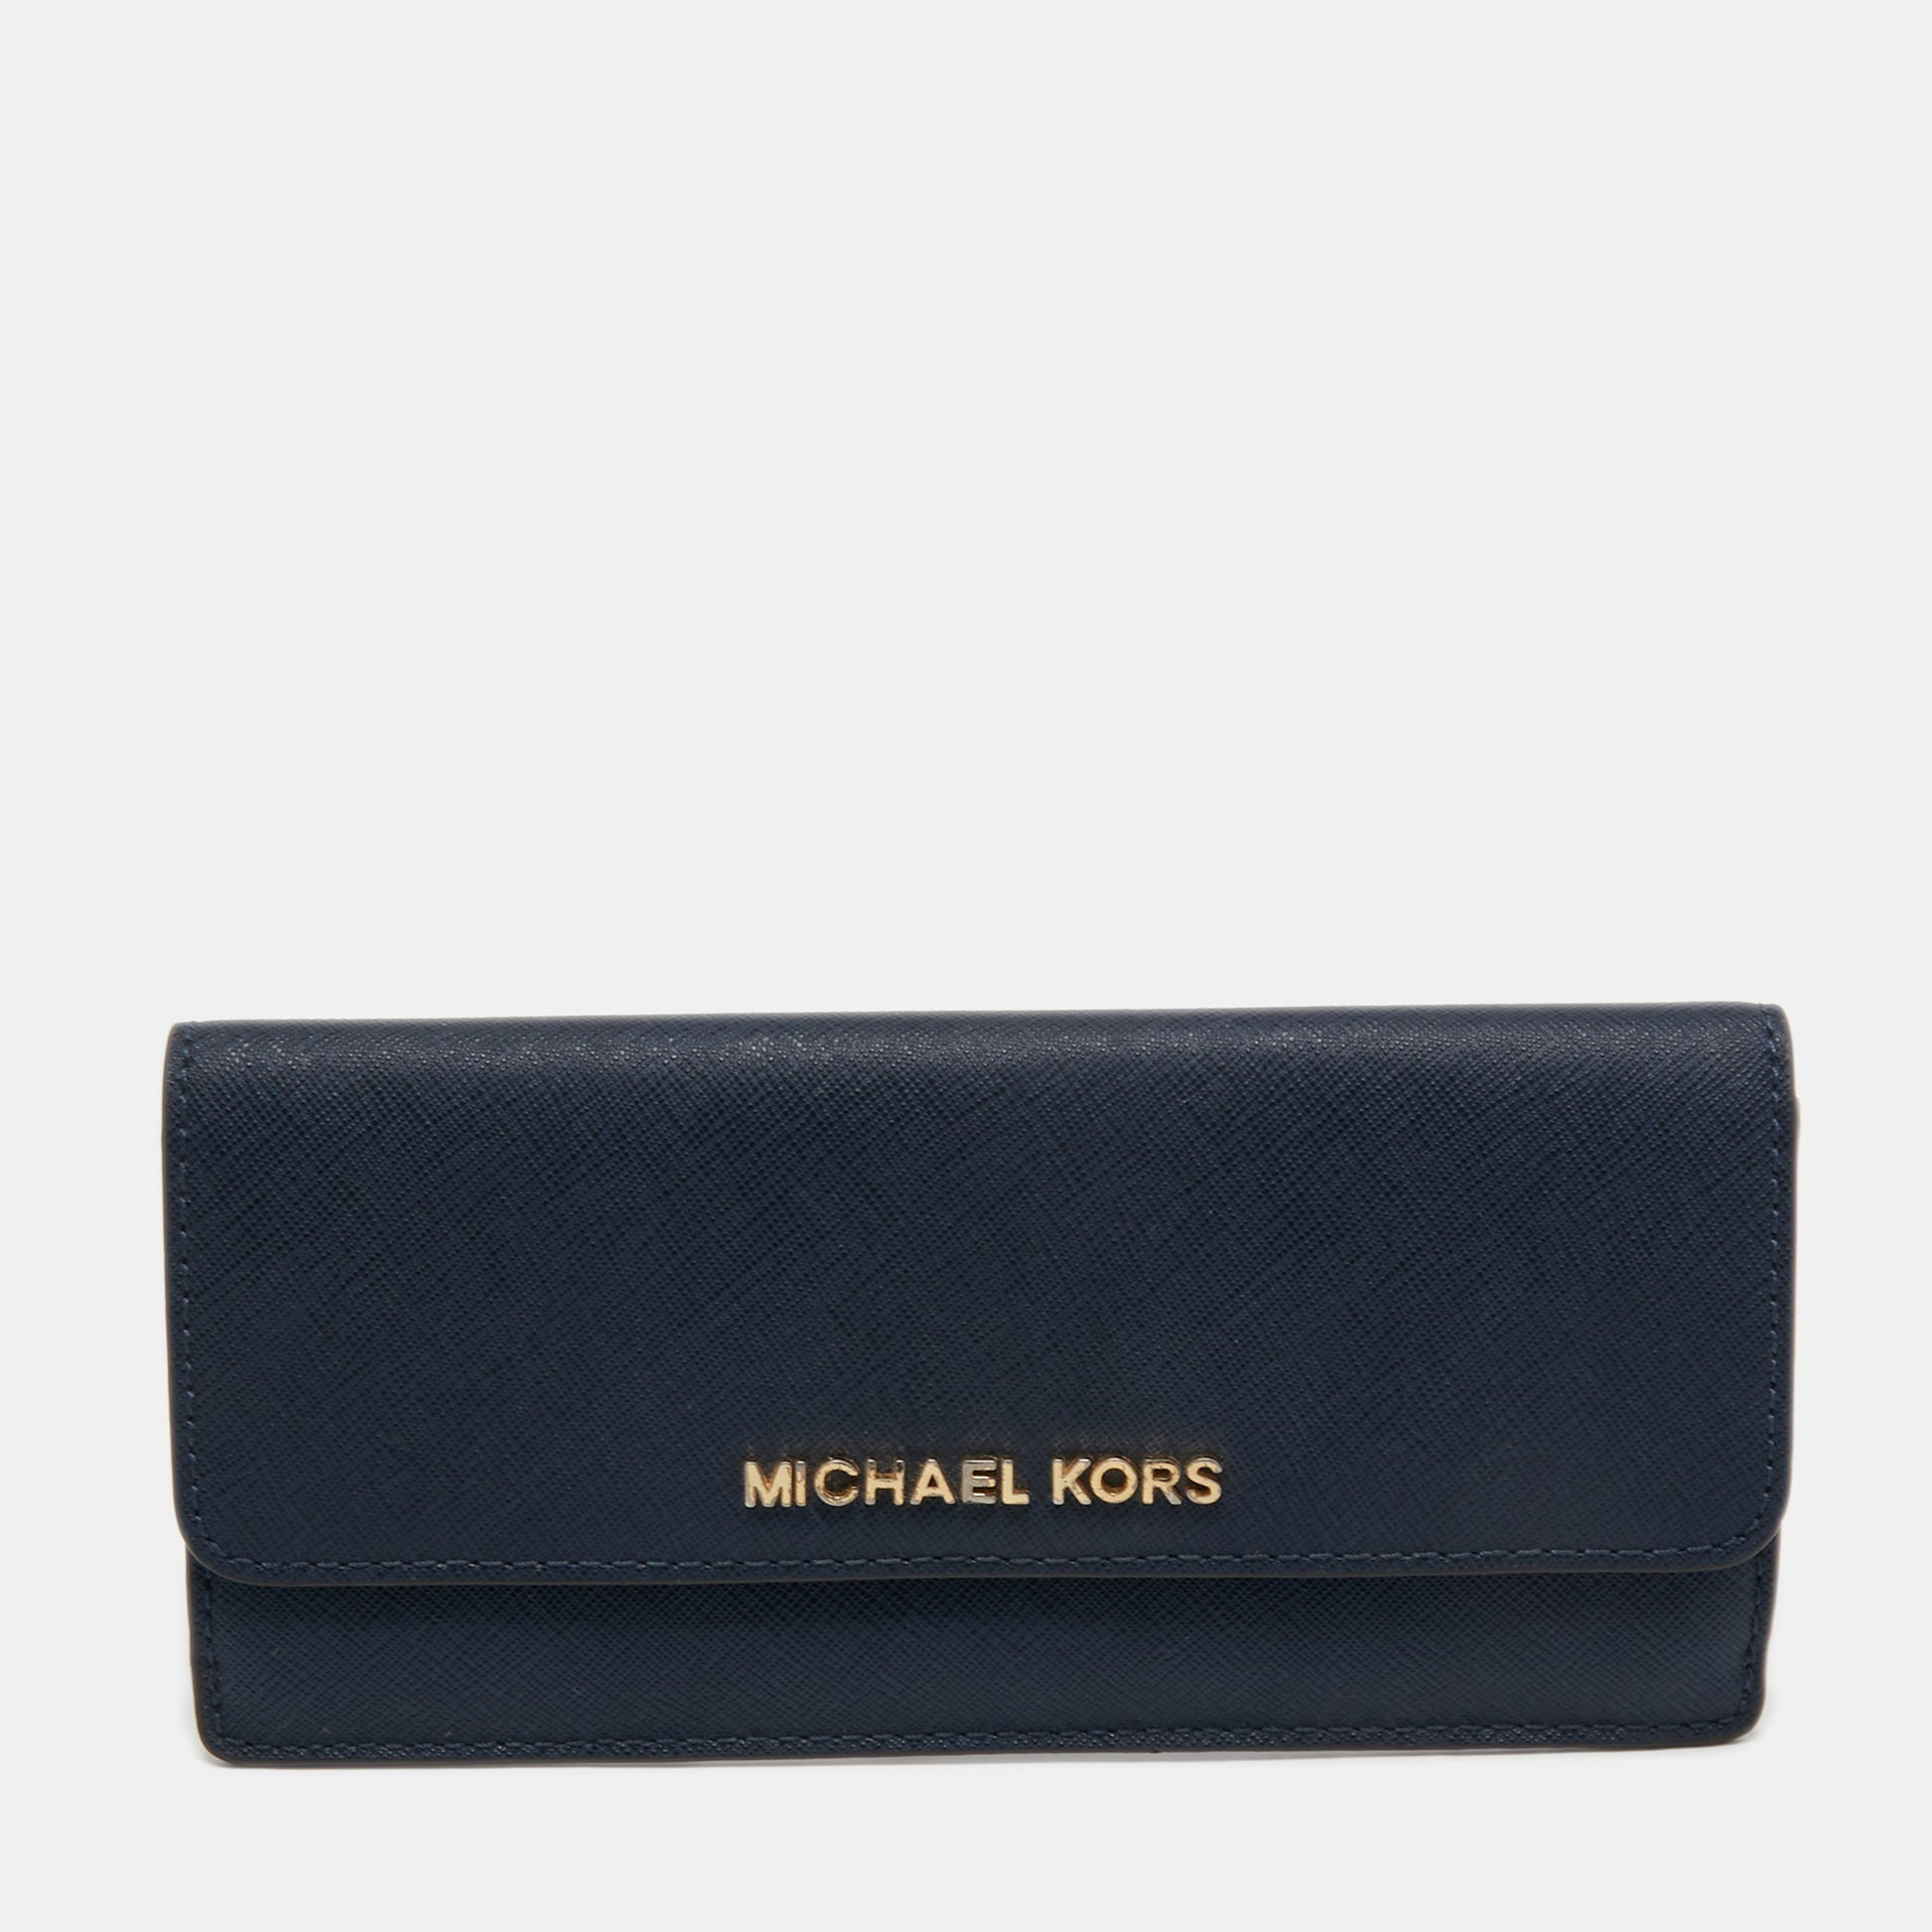 Michael Kors Wallet Used